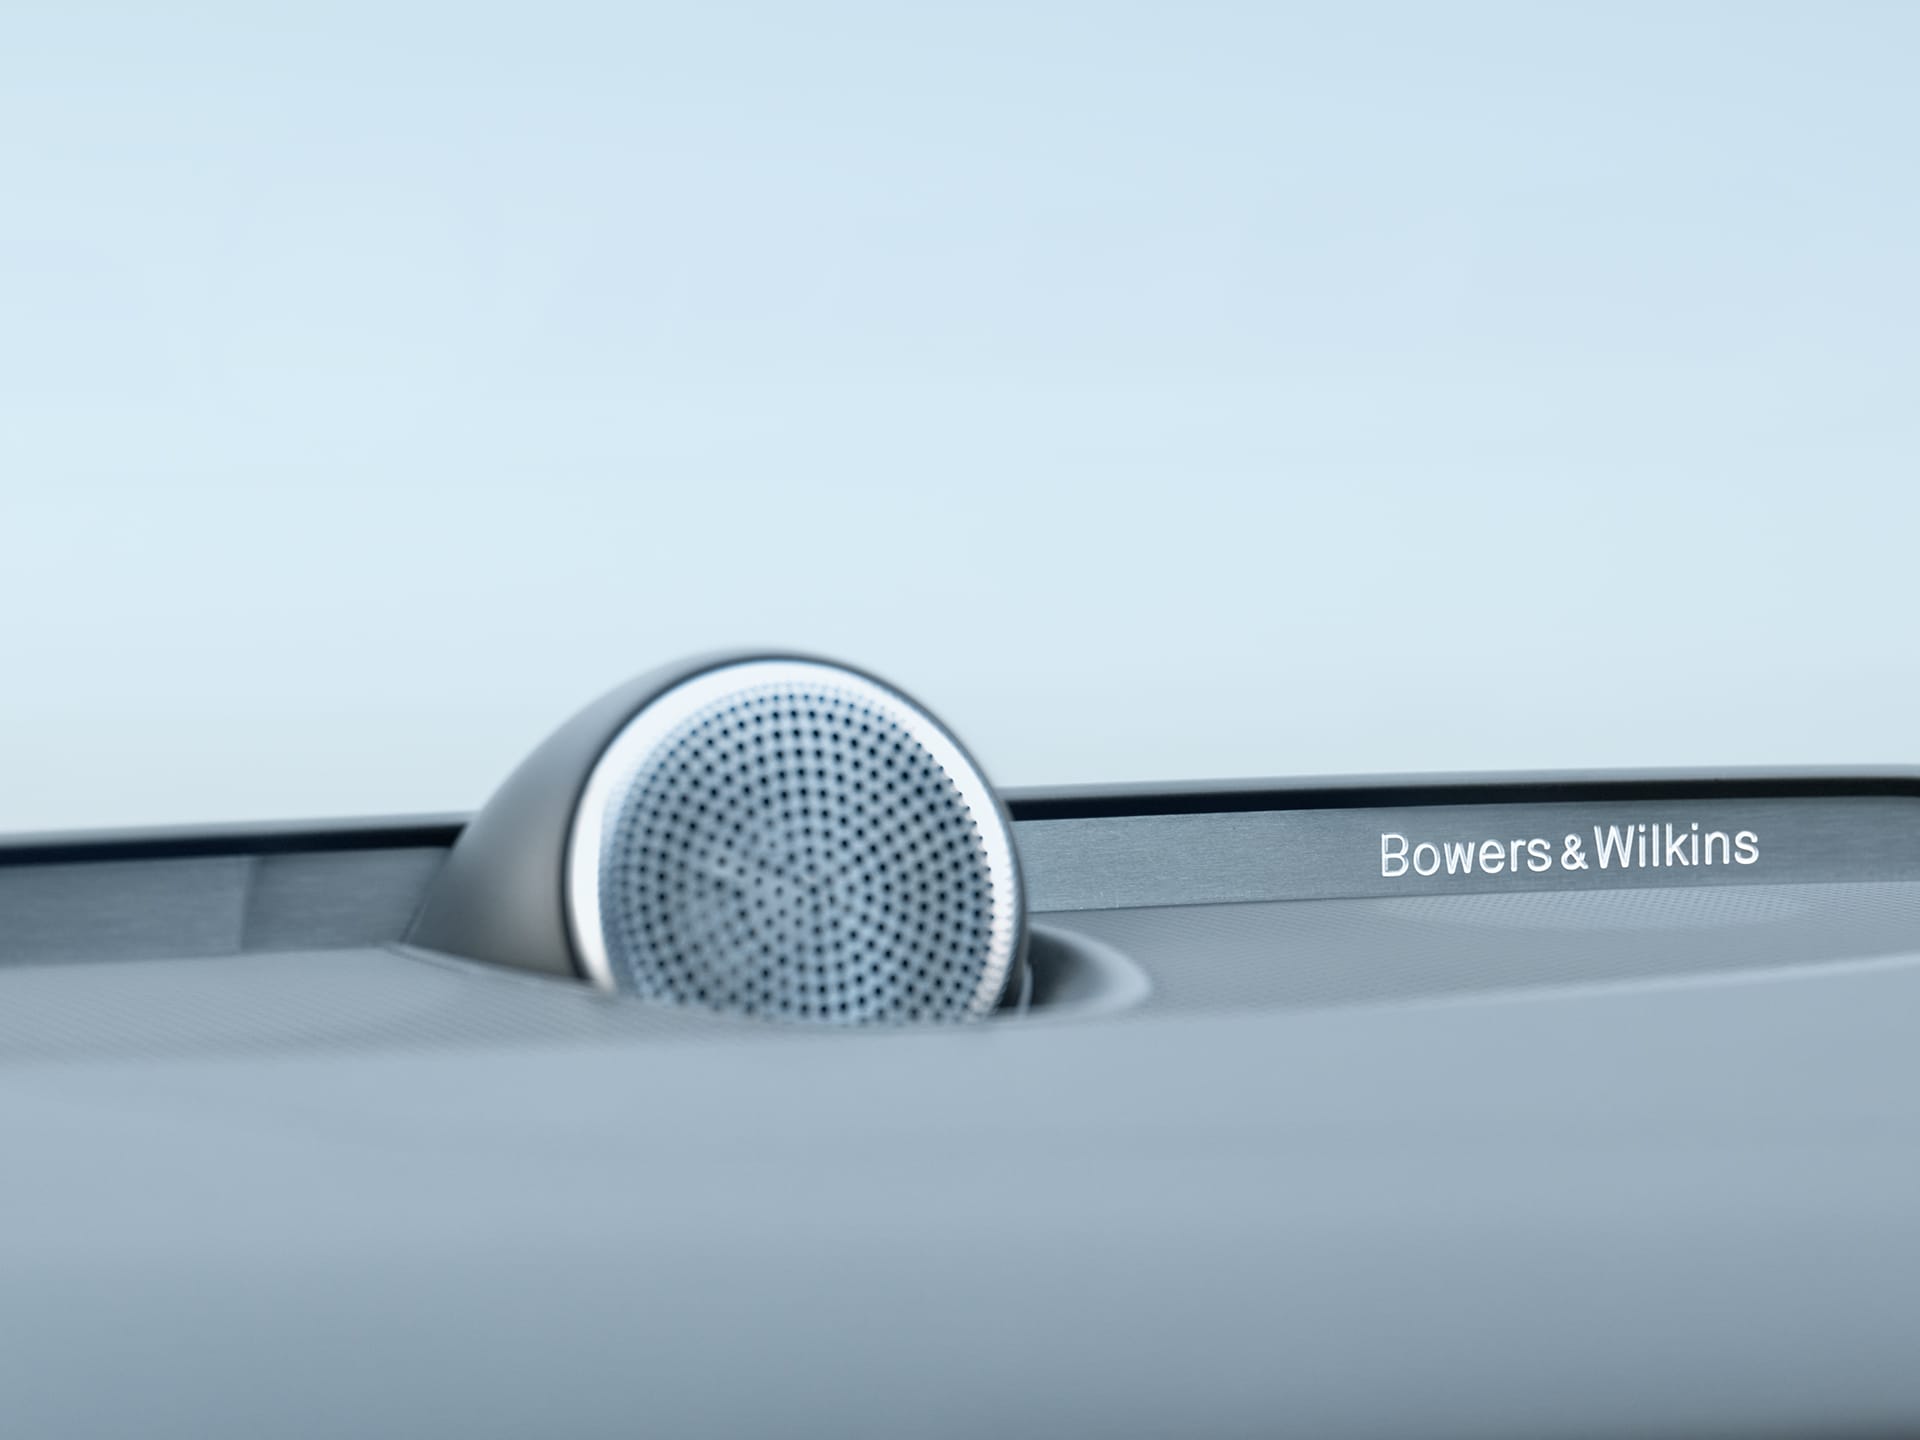 沃尔沃 S60 RECHARGE 内置 Bowers & Wilkins® 扬声器